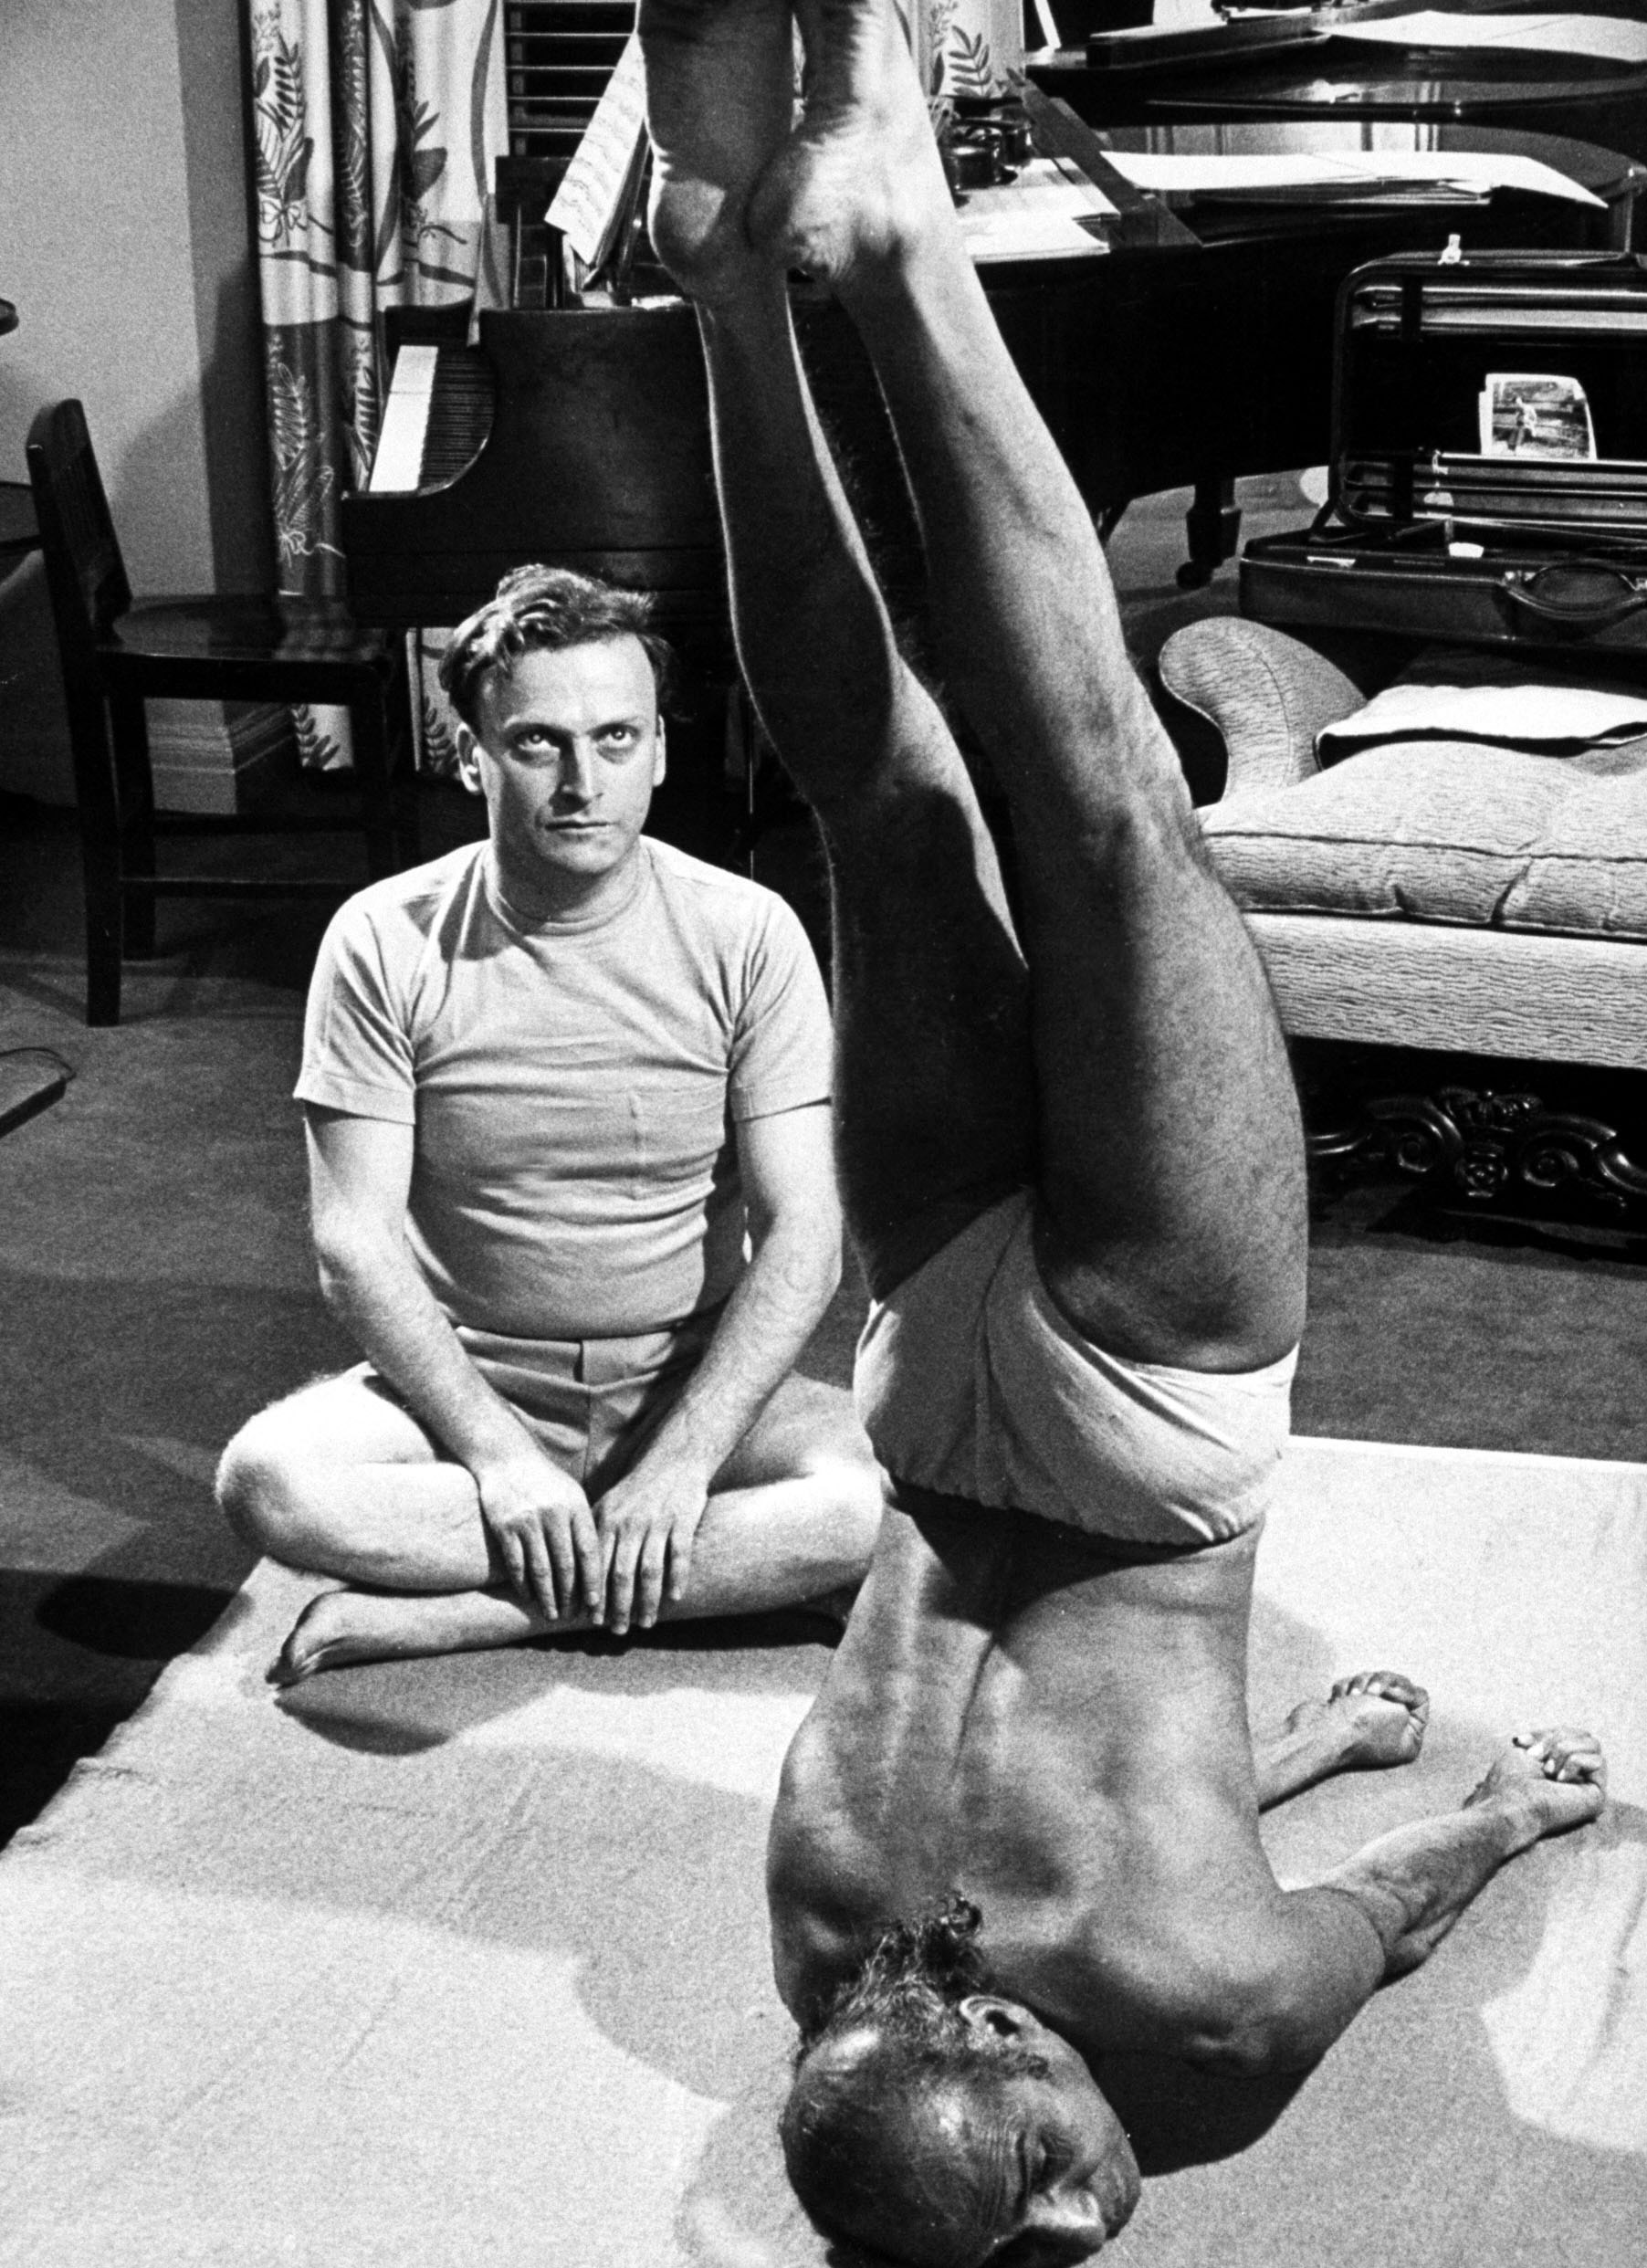 Vintage Yoga photo from LIFE magazine.